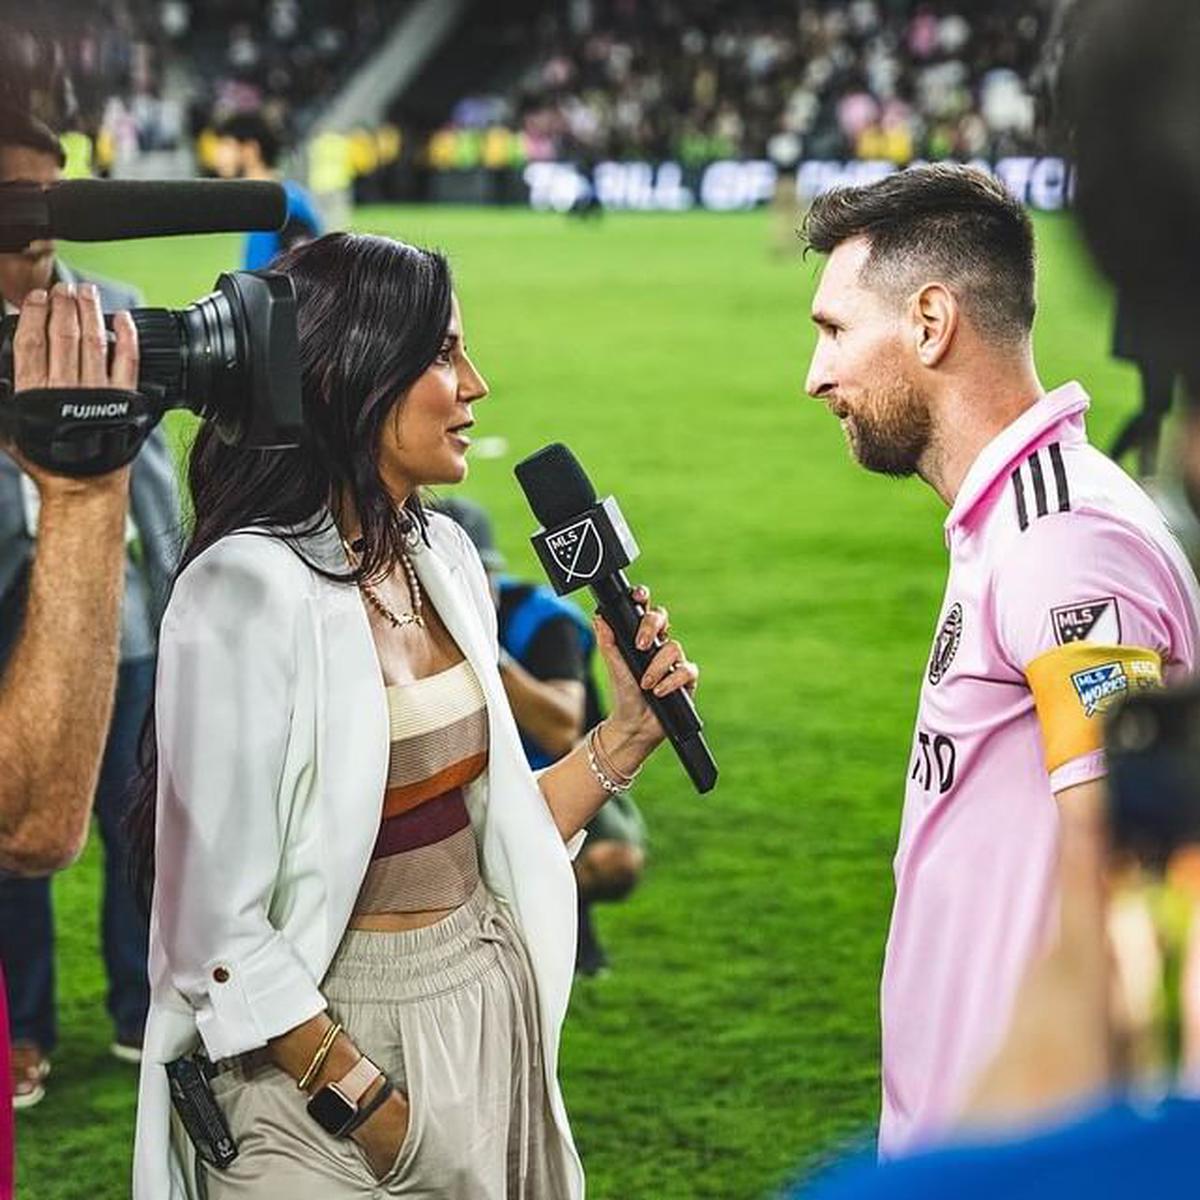 Antonella González y su entrevista a Messi | Inter Miami
Foto: @antosports